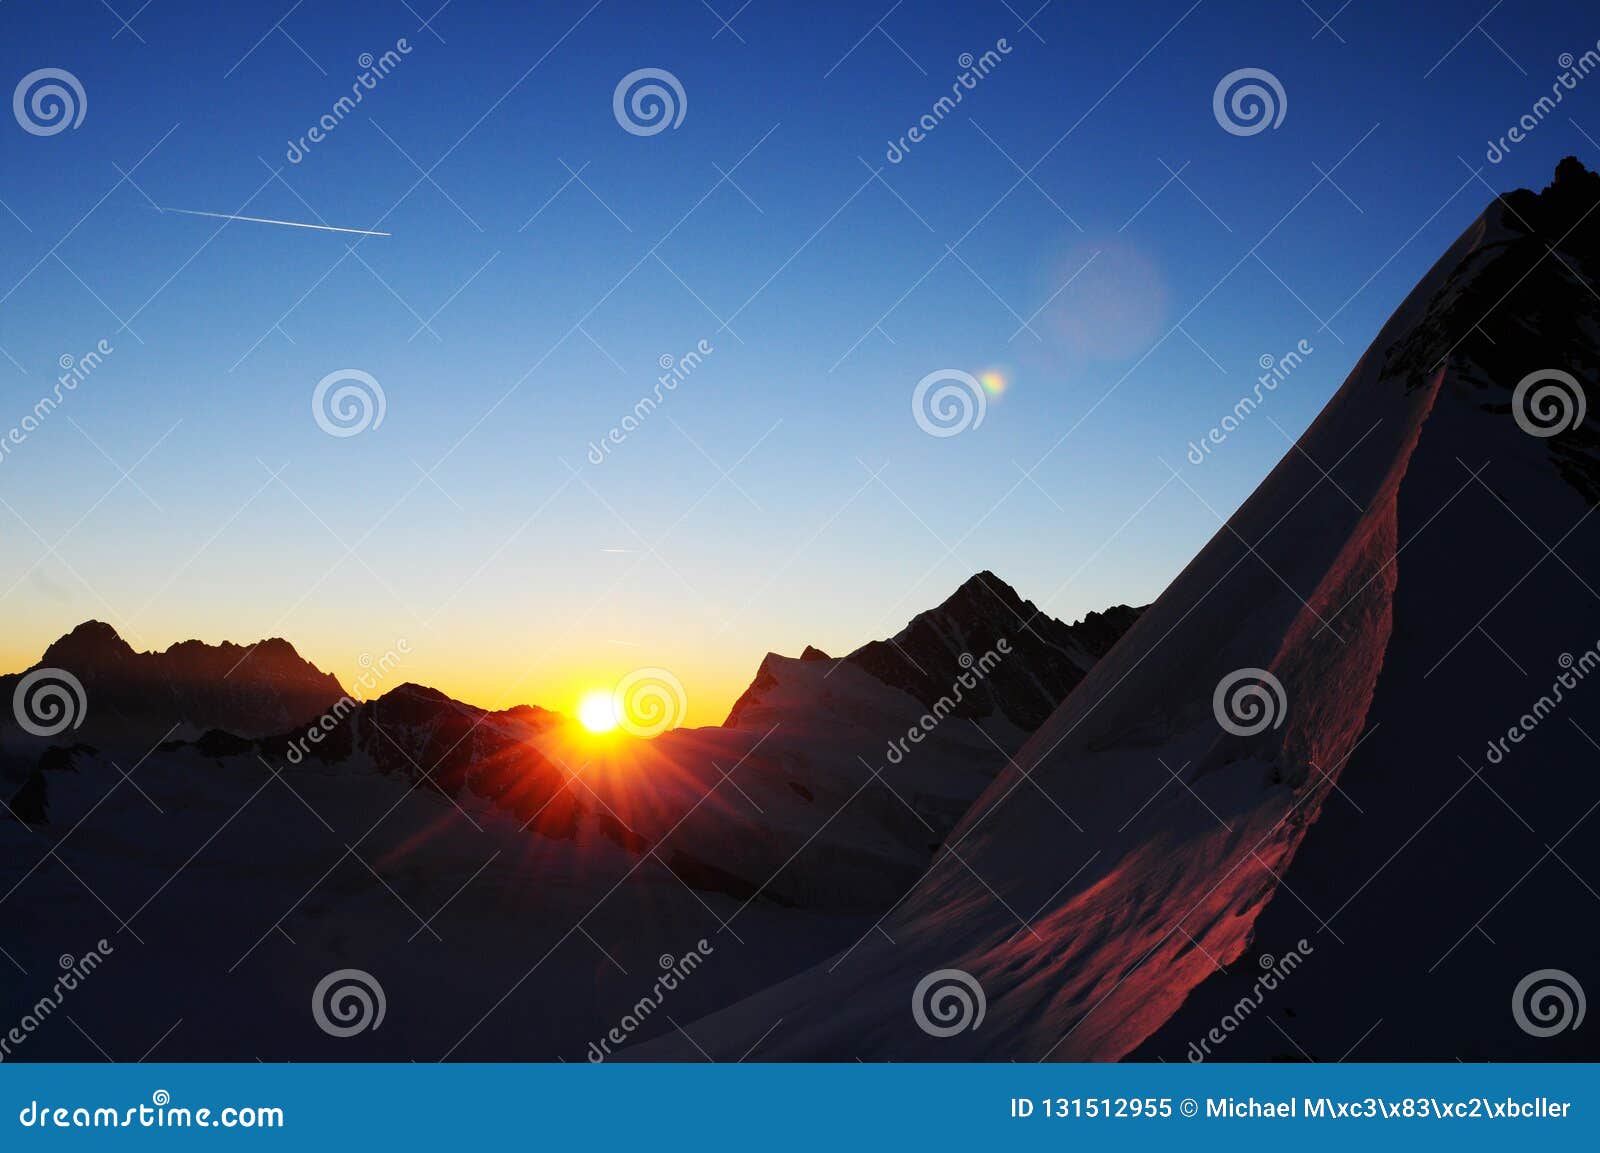 mÃÂ¶nchshut: panoramic mountain view from europes highest alpin hut in the siwss alps